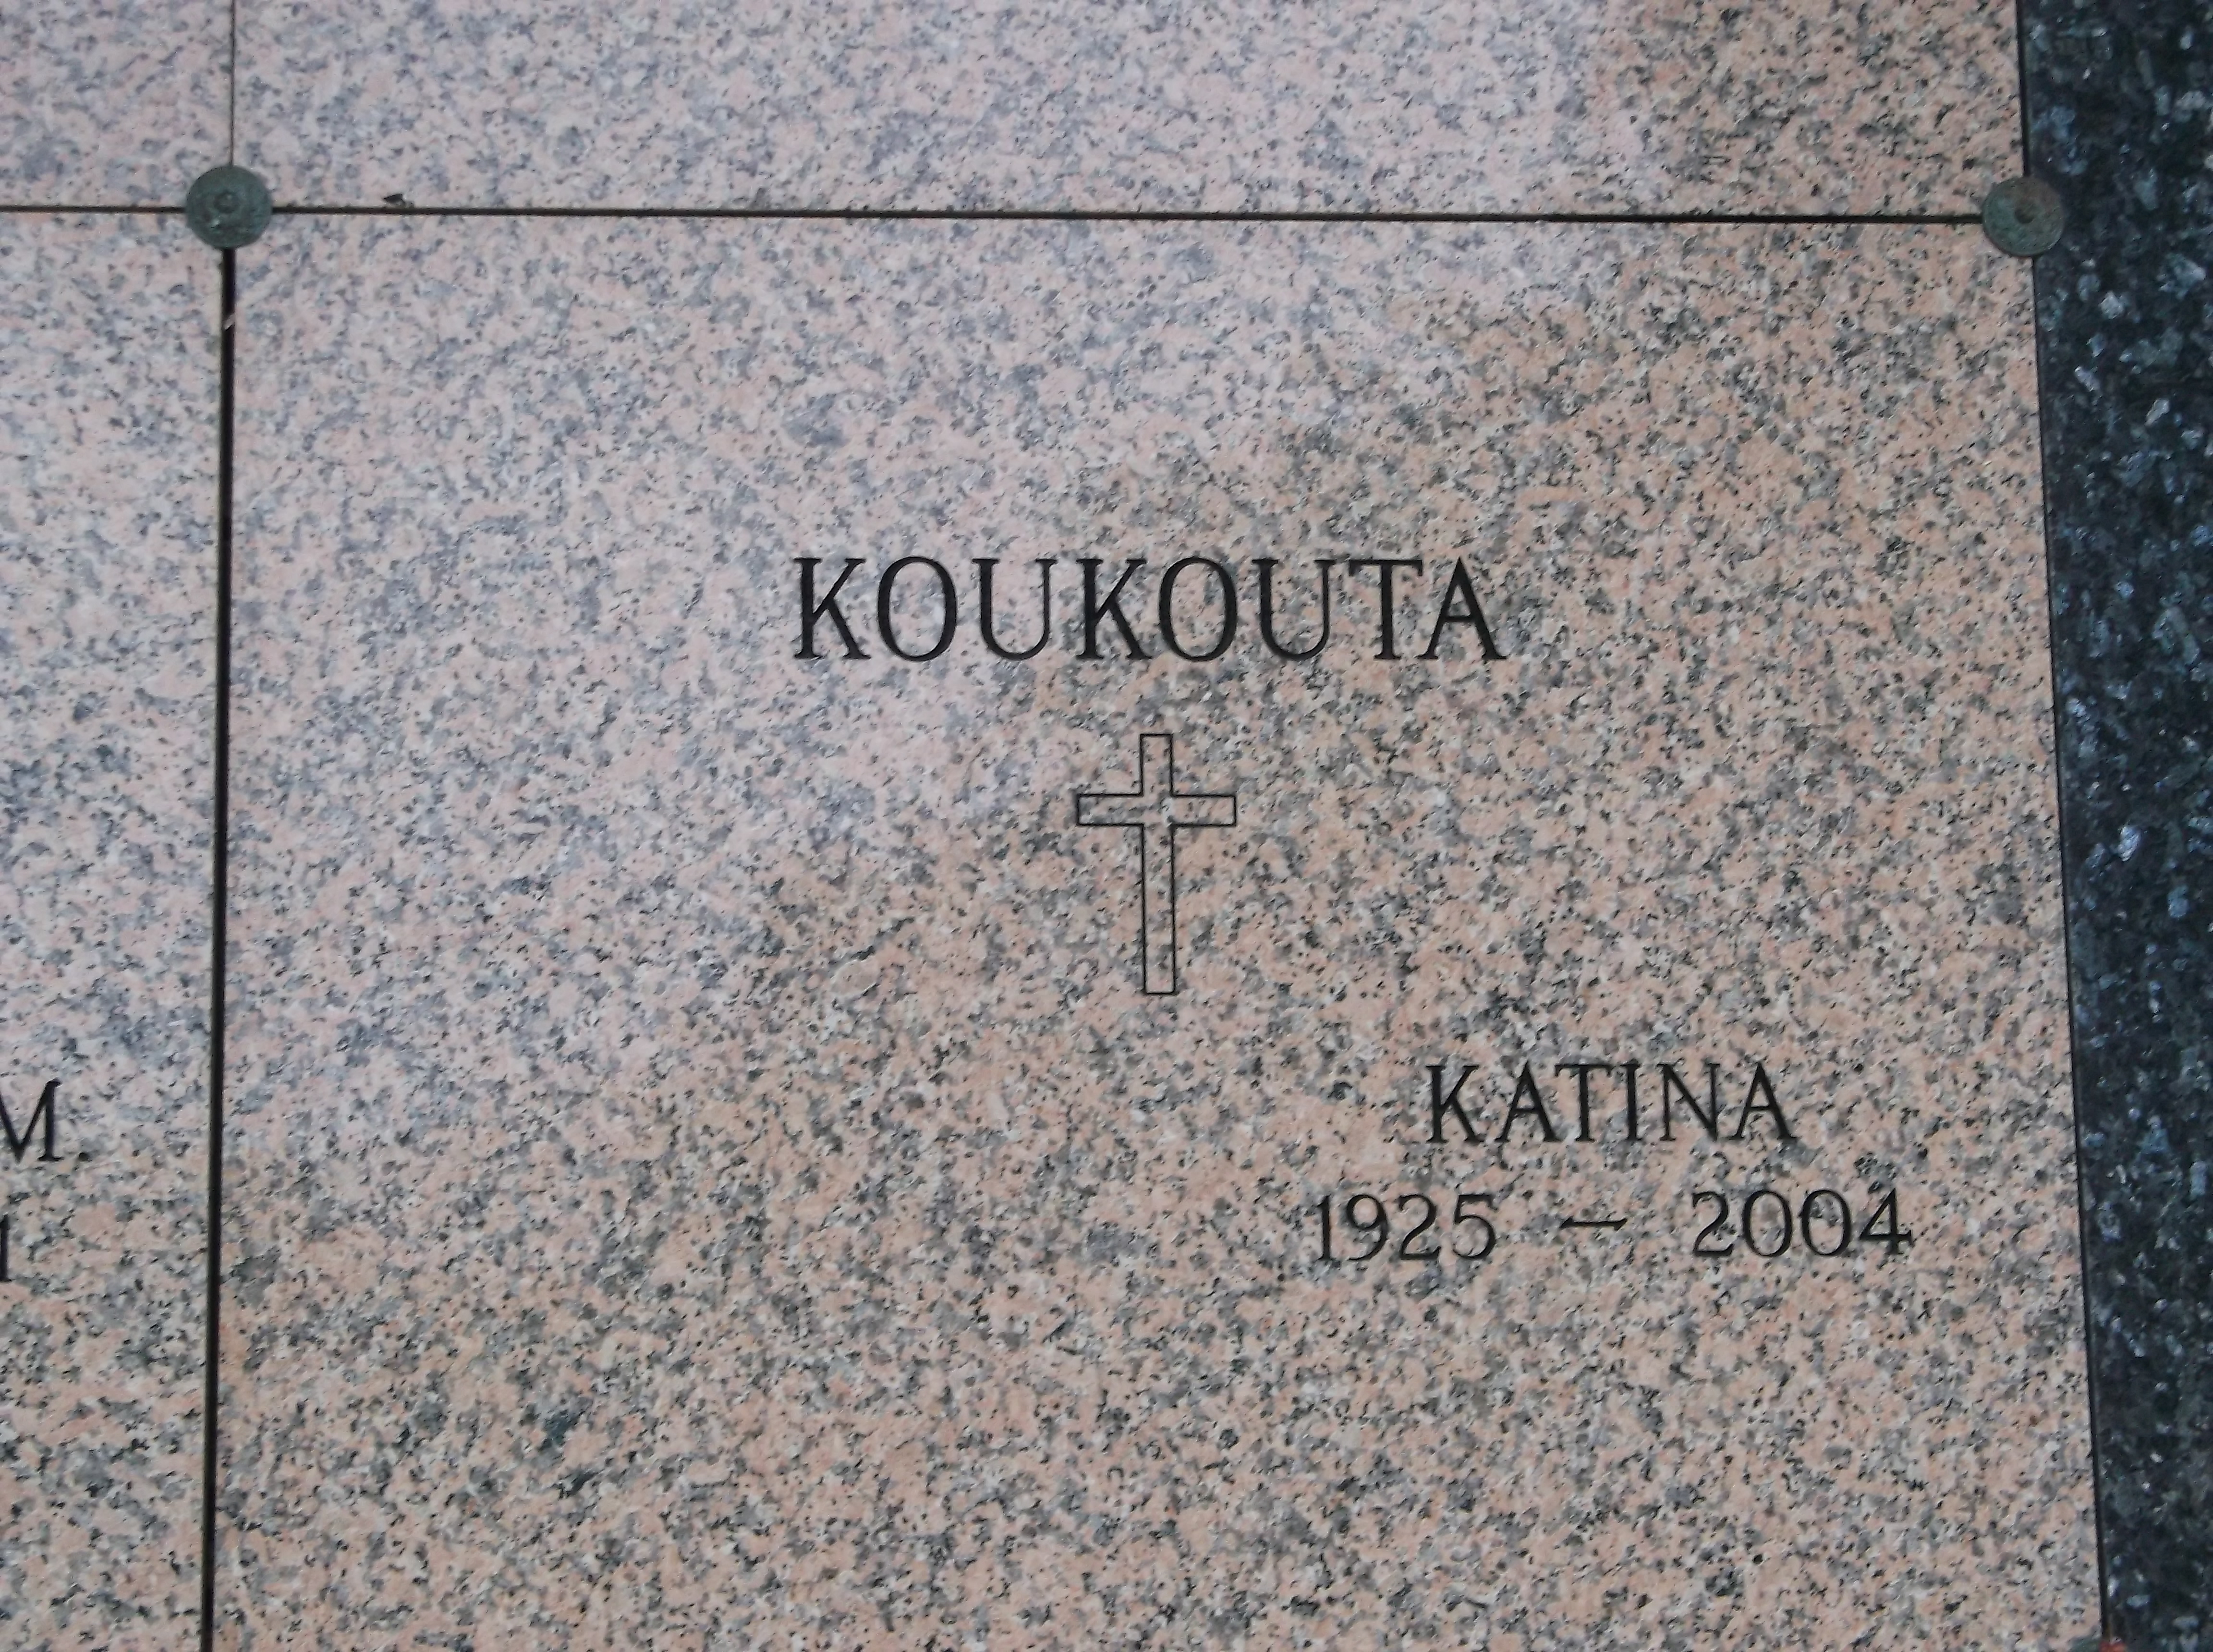 Katina Koukouta